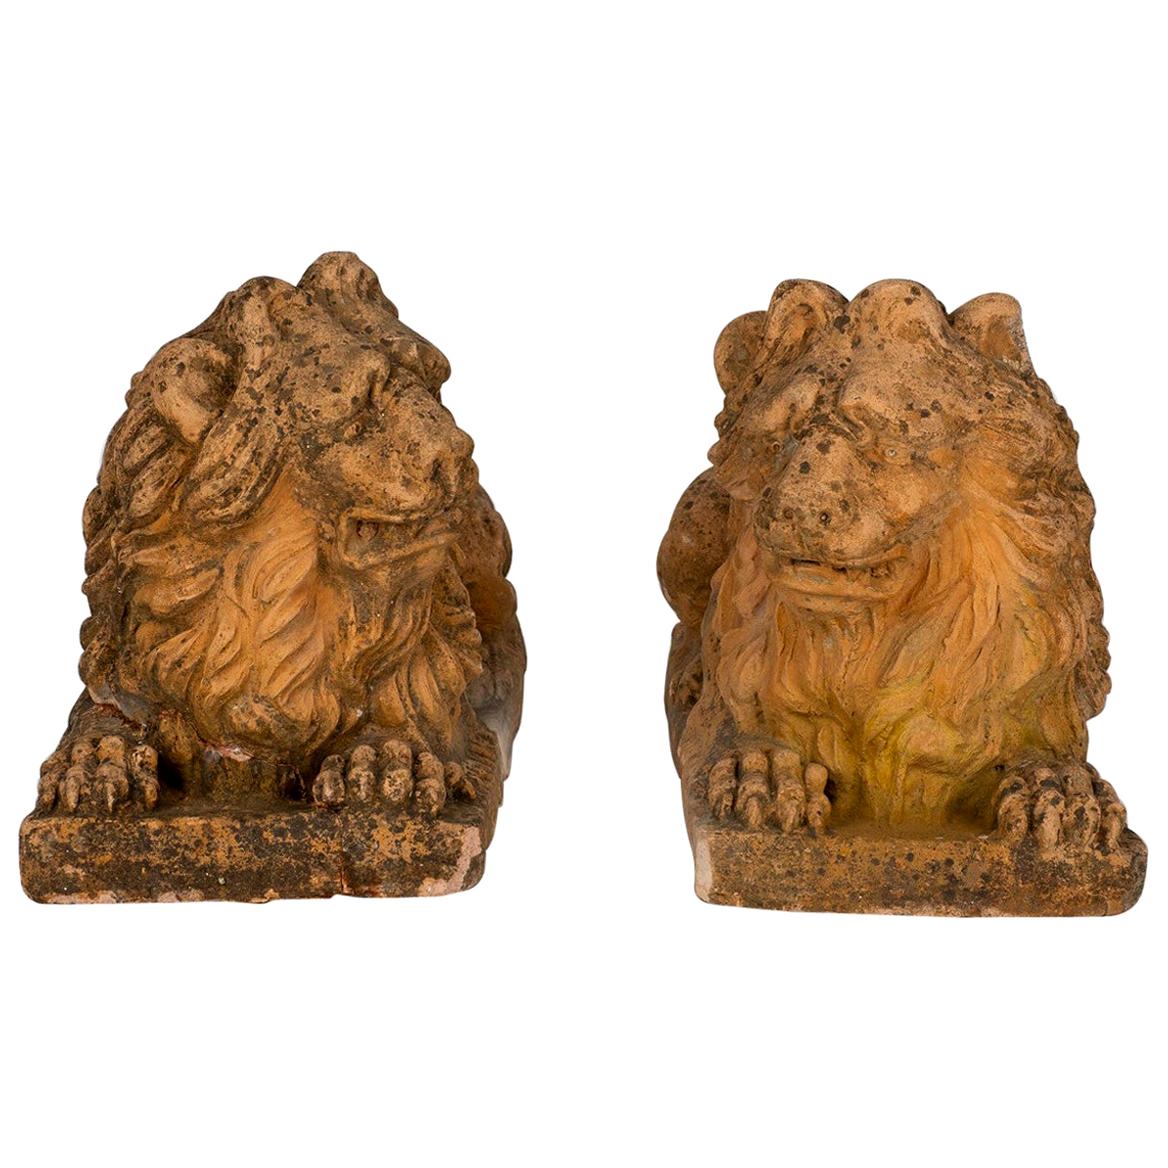 Ein großes gegenüberliegendes Paar italienischer Terrakotta-Löwen aus der Mitte des 19. Jeder Löwe steht auf einem rechteckigen Sockel. Wunderschöne ausdrucksstarke Gesichter und wunderschön geschnitzte Mähnen mit toller Patina.